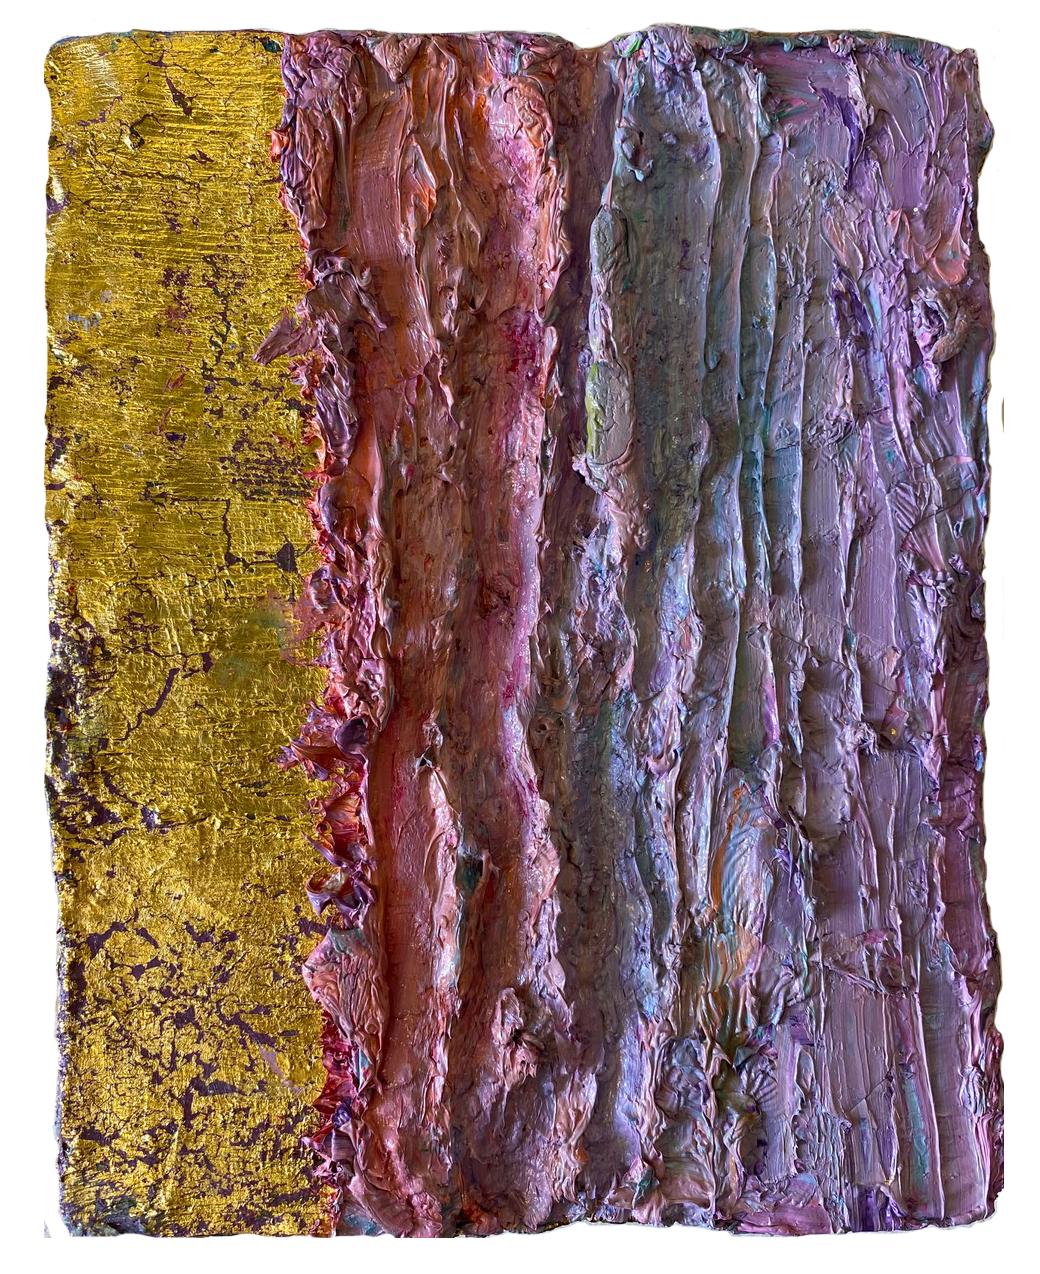 Farbgrenzen #35. Abstraktes Gemälde auf Leinwand, montiert auf einer Strebe.